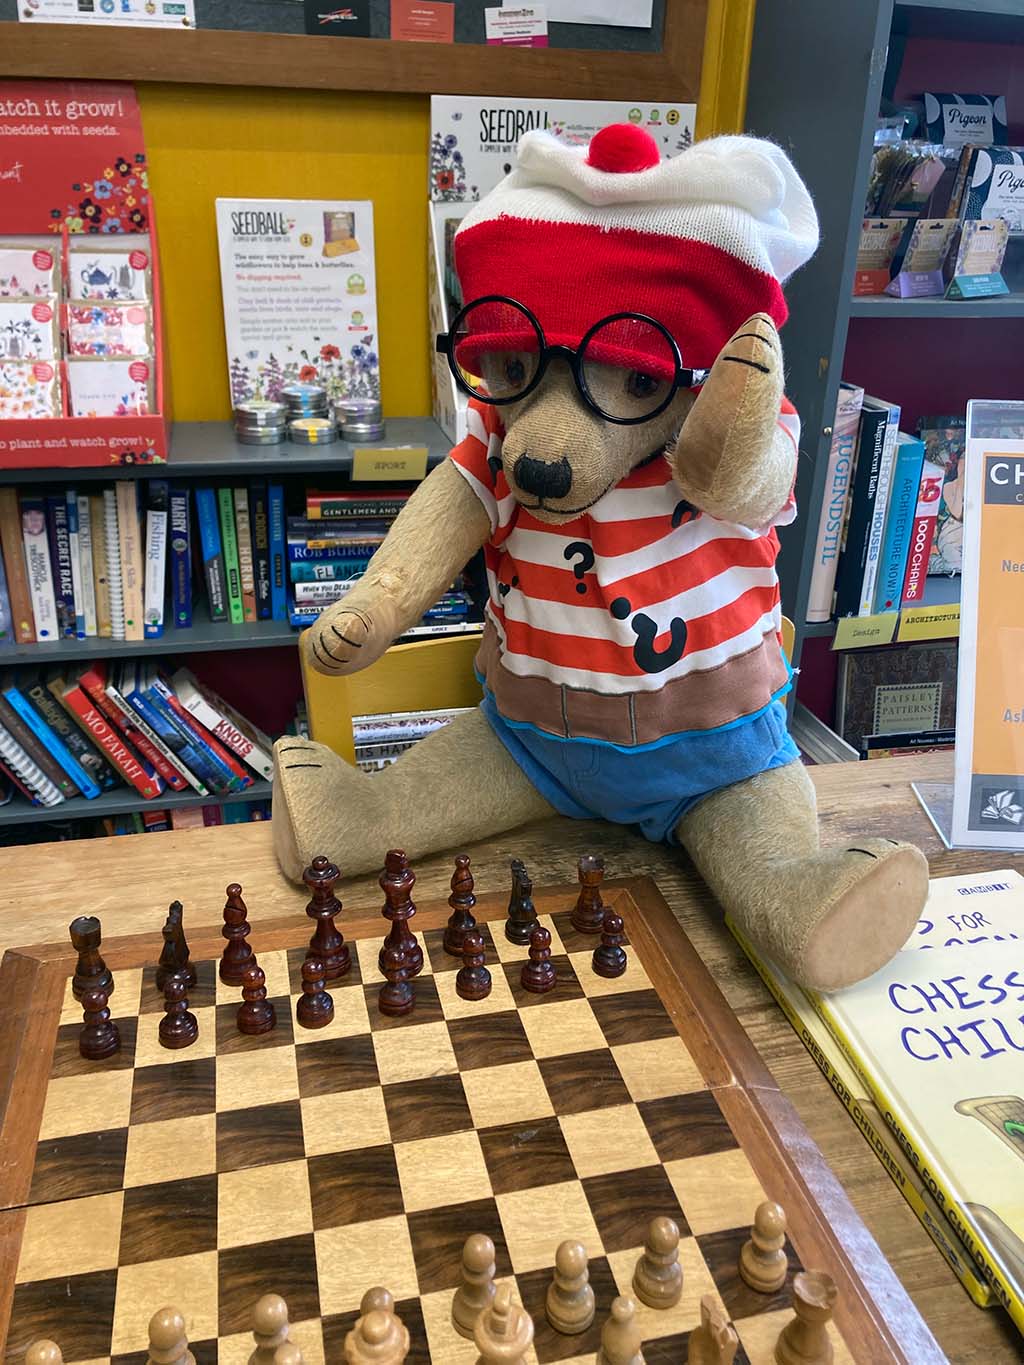 Winifred bear Chesham Museum mascot playing chess